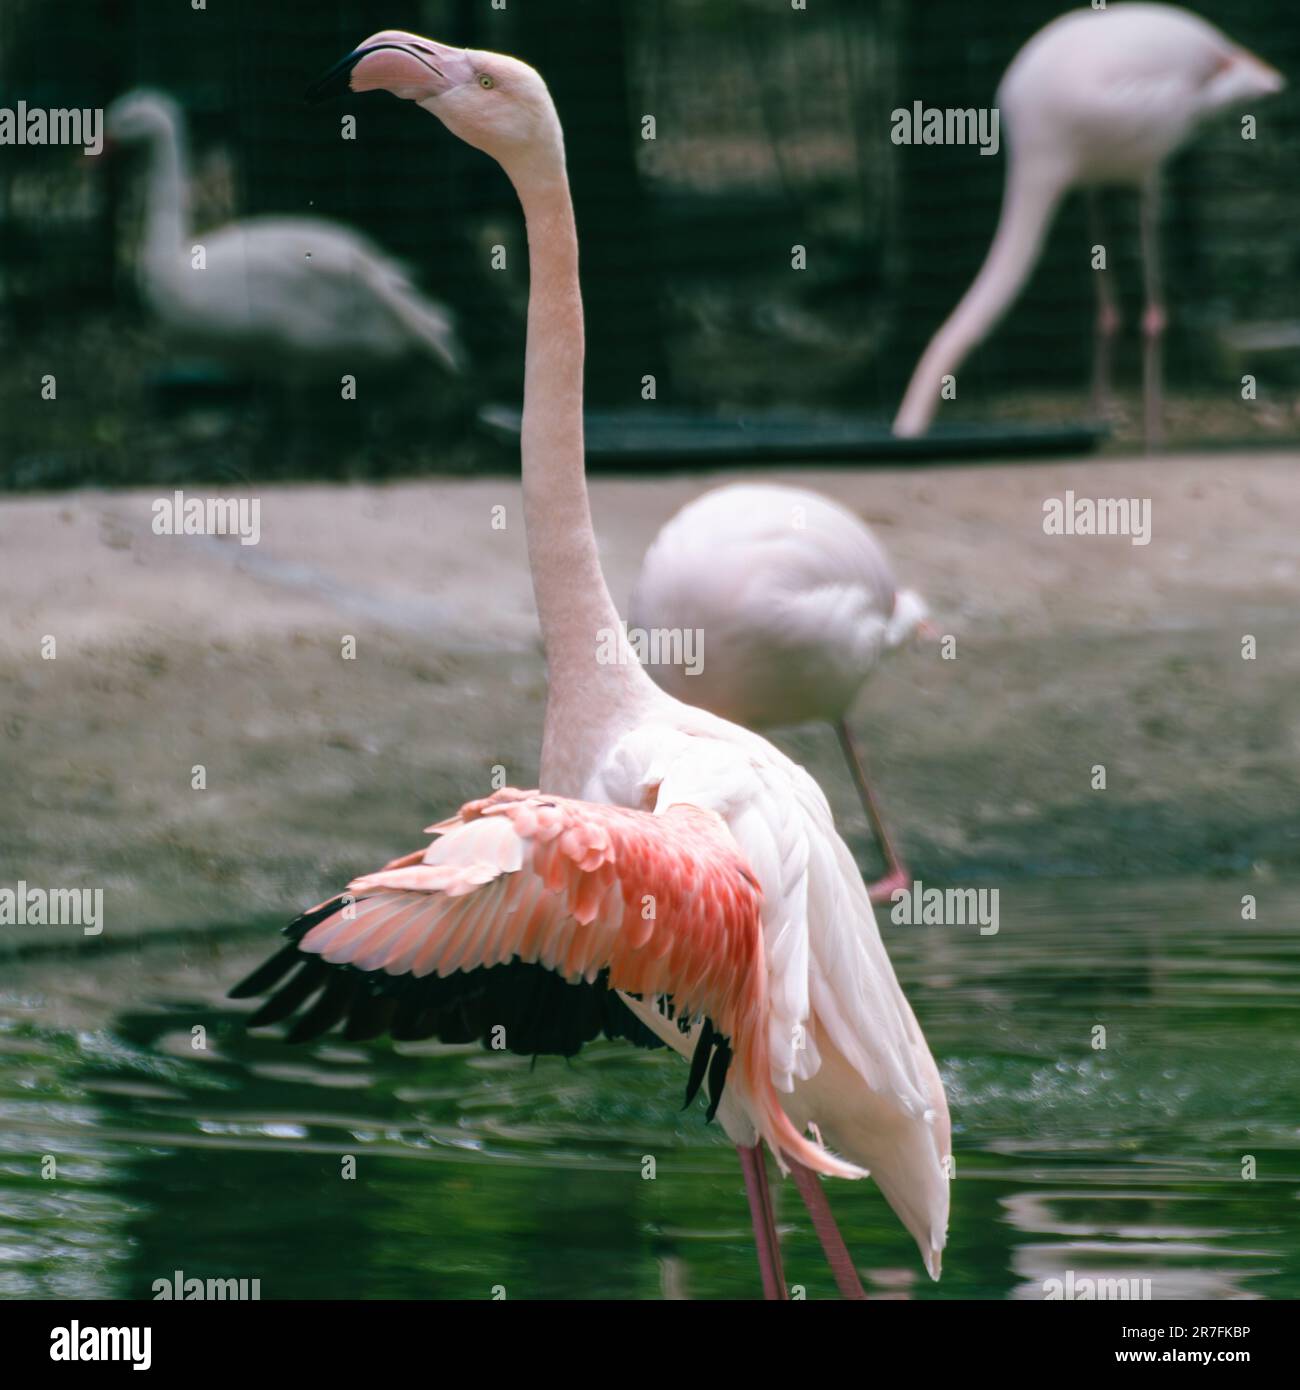 Pinker Flamingo-Watvögel mit langem Hals und Flügeln in der Nähe eines Teichs mit dunkelgrünem, verschwommenem Hintergrund Stockfoto